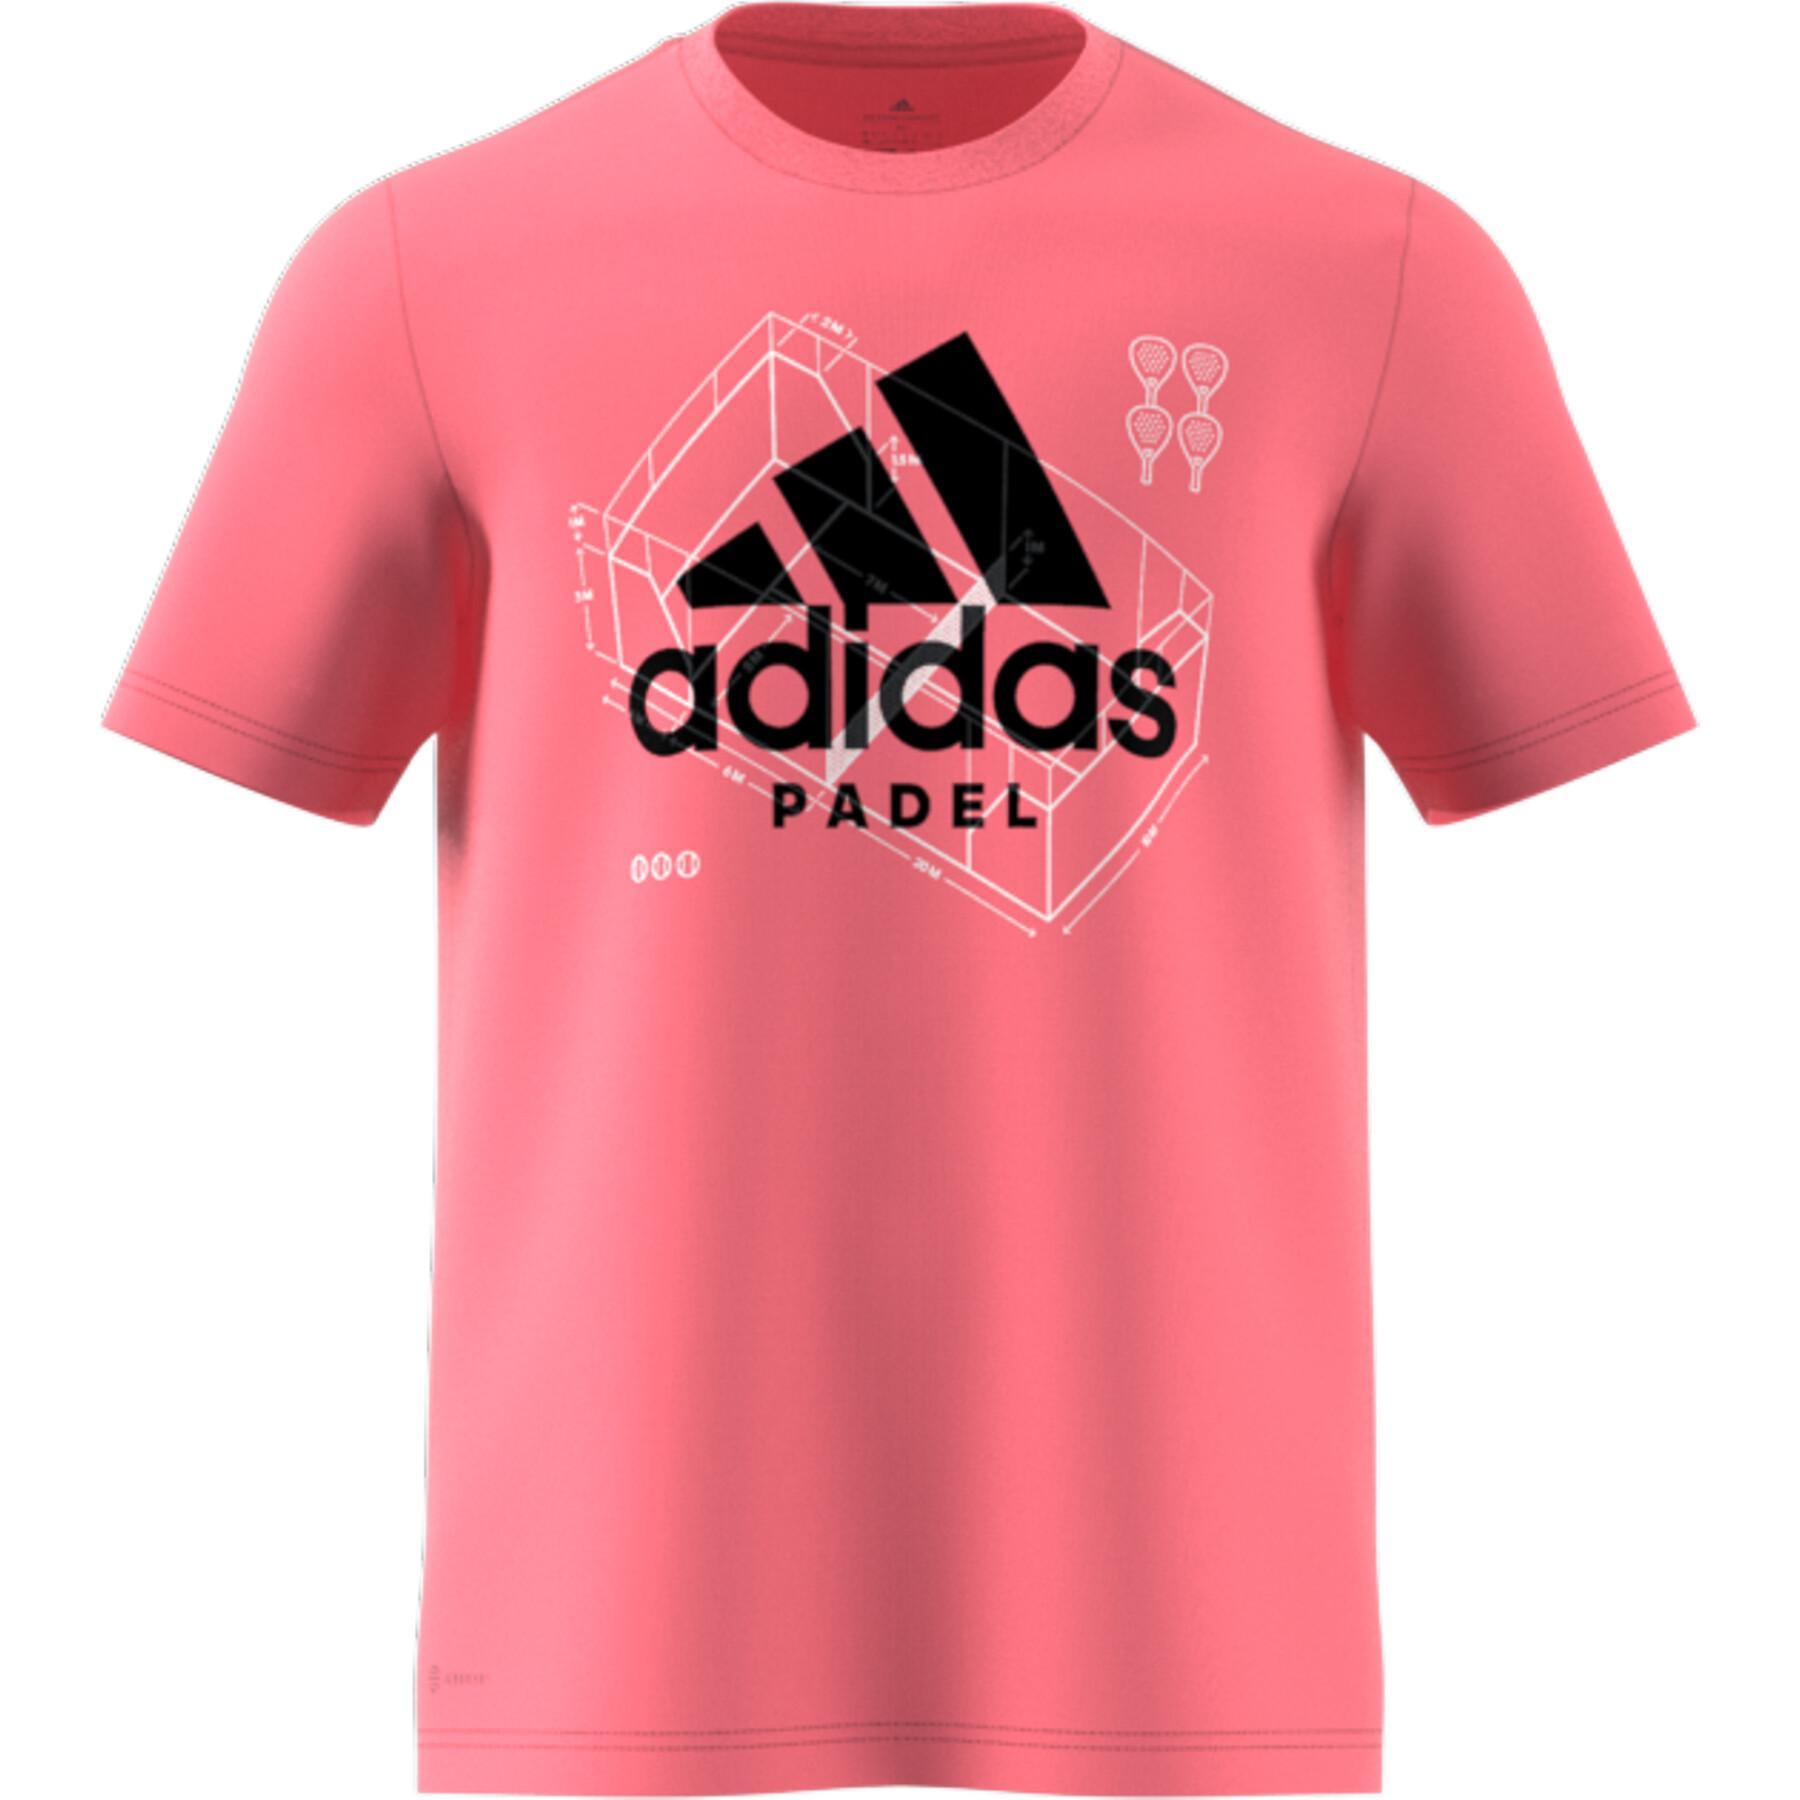 T-shirt adidas Padel Graphic